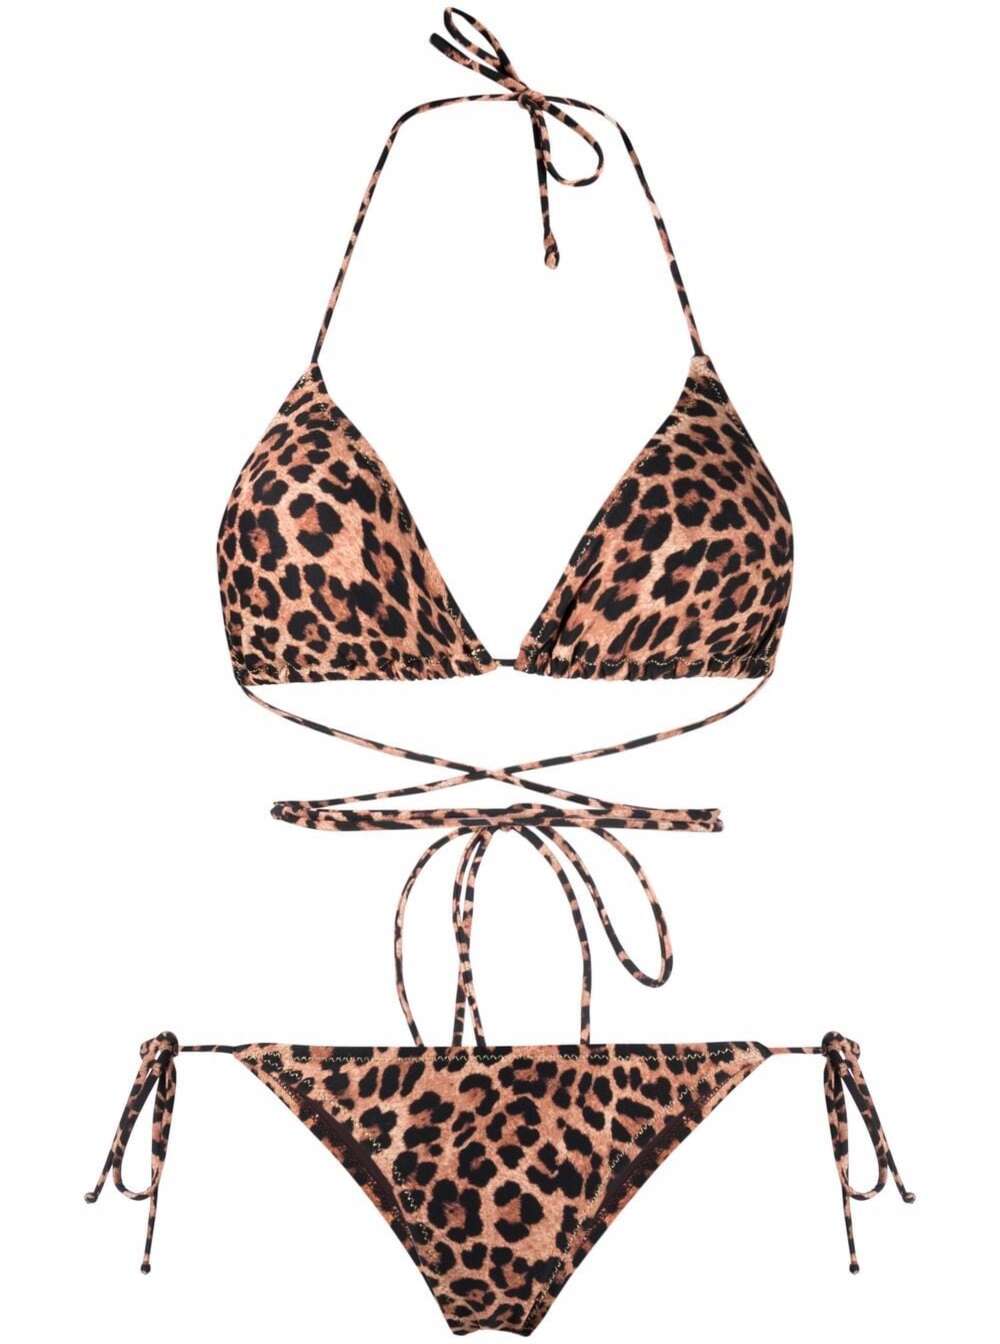 Reina Olga Womans Miami Leopard Print Wrap-around Bikini